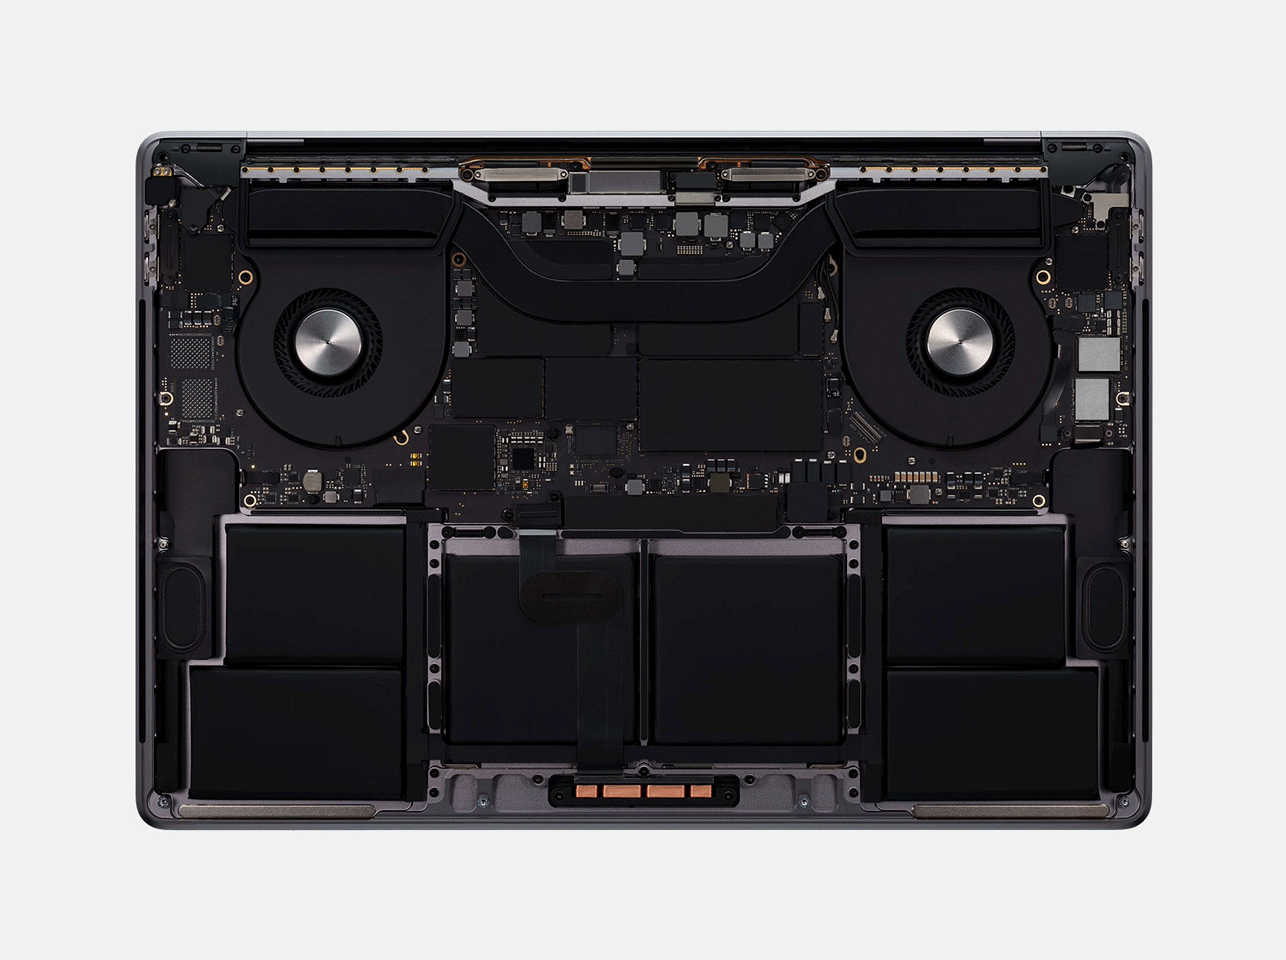 Macbook Pro 2019 TouchBar 15,4 pouces - iOccasion